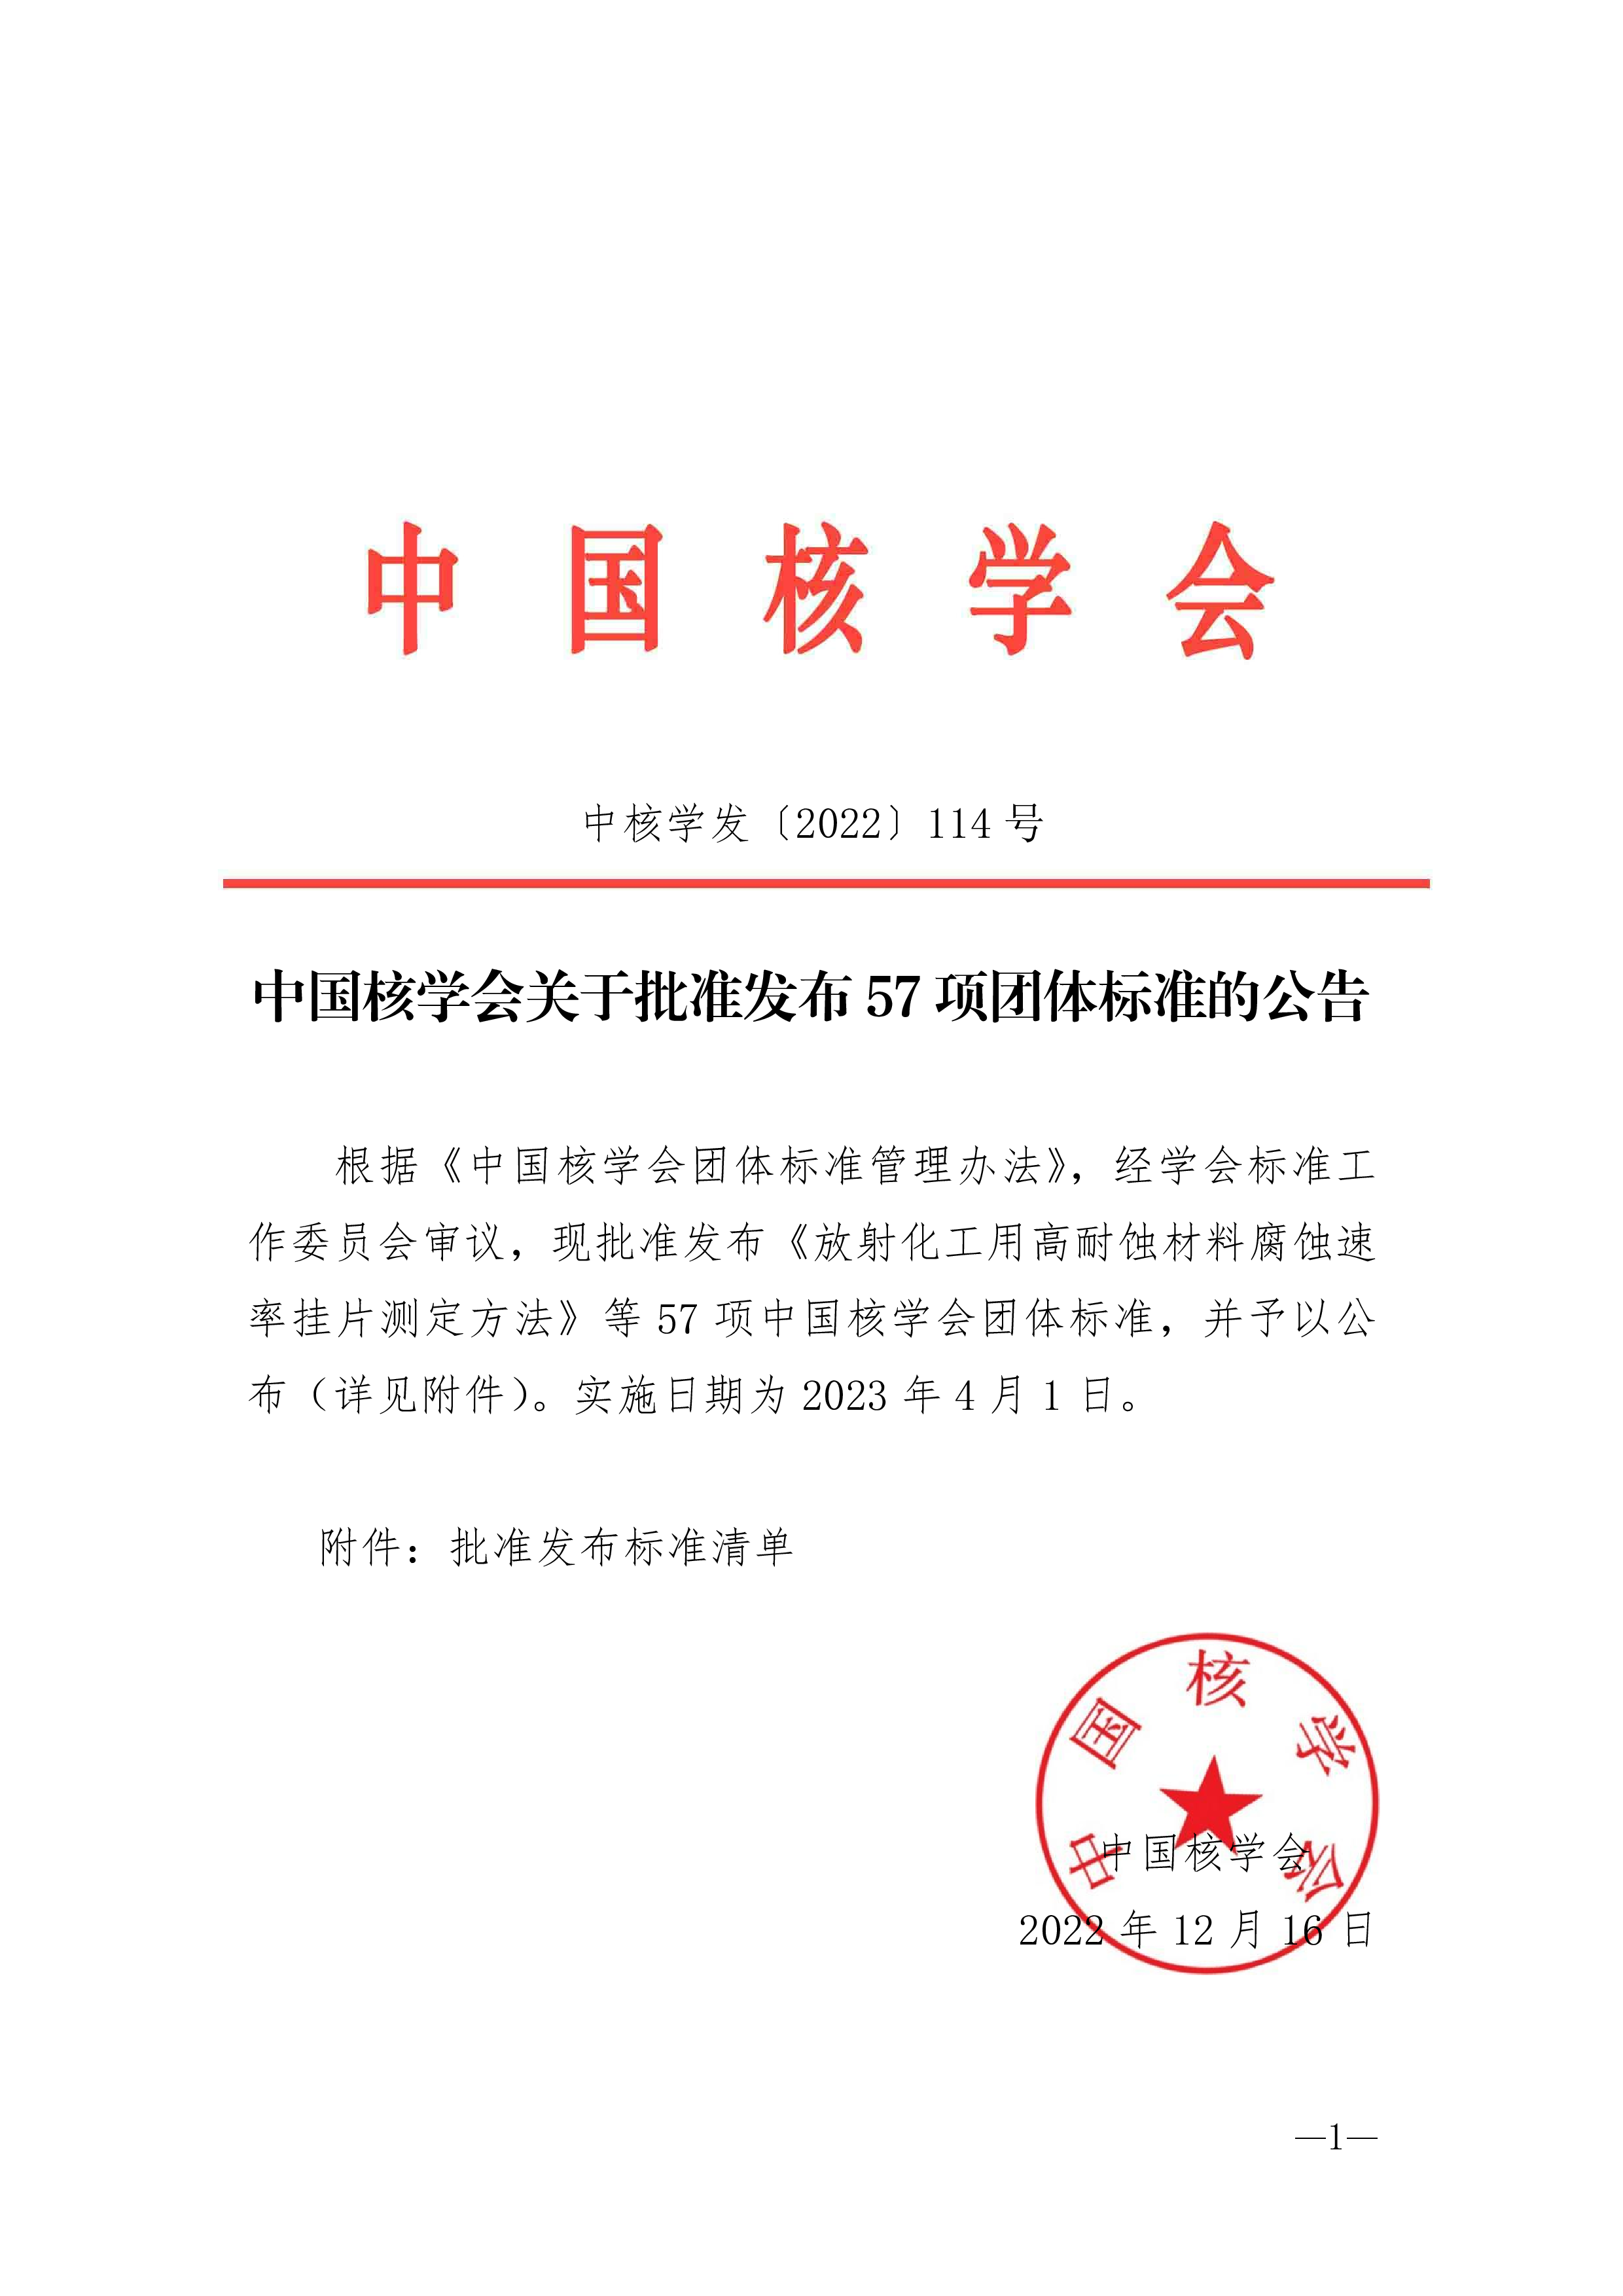 中国核学会关于批准发布57项团体标准的公告-0.png